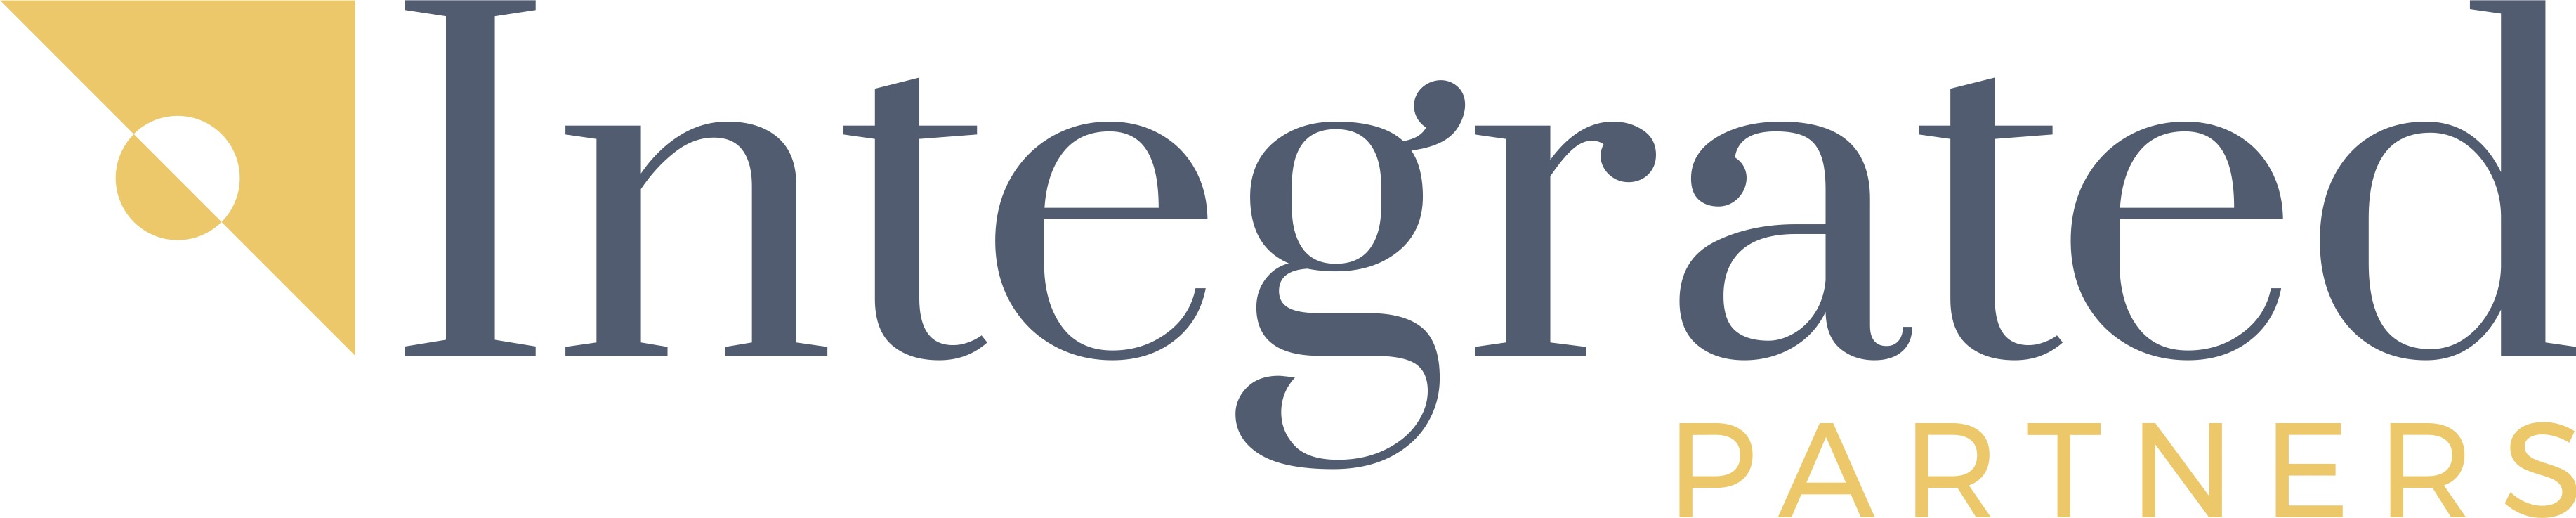 Integrated Partners Company Logo